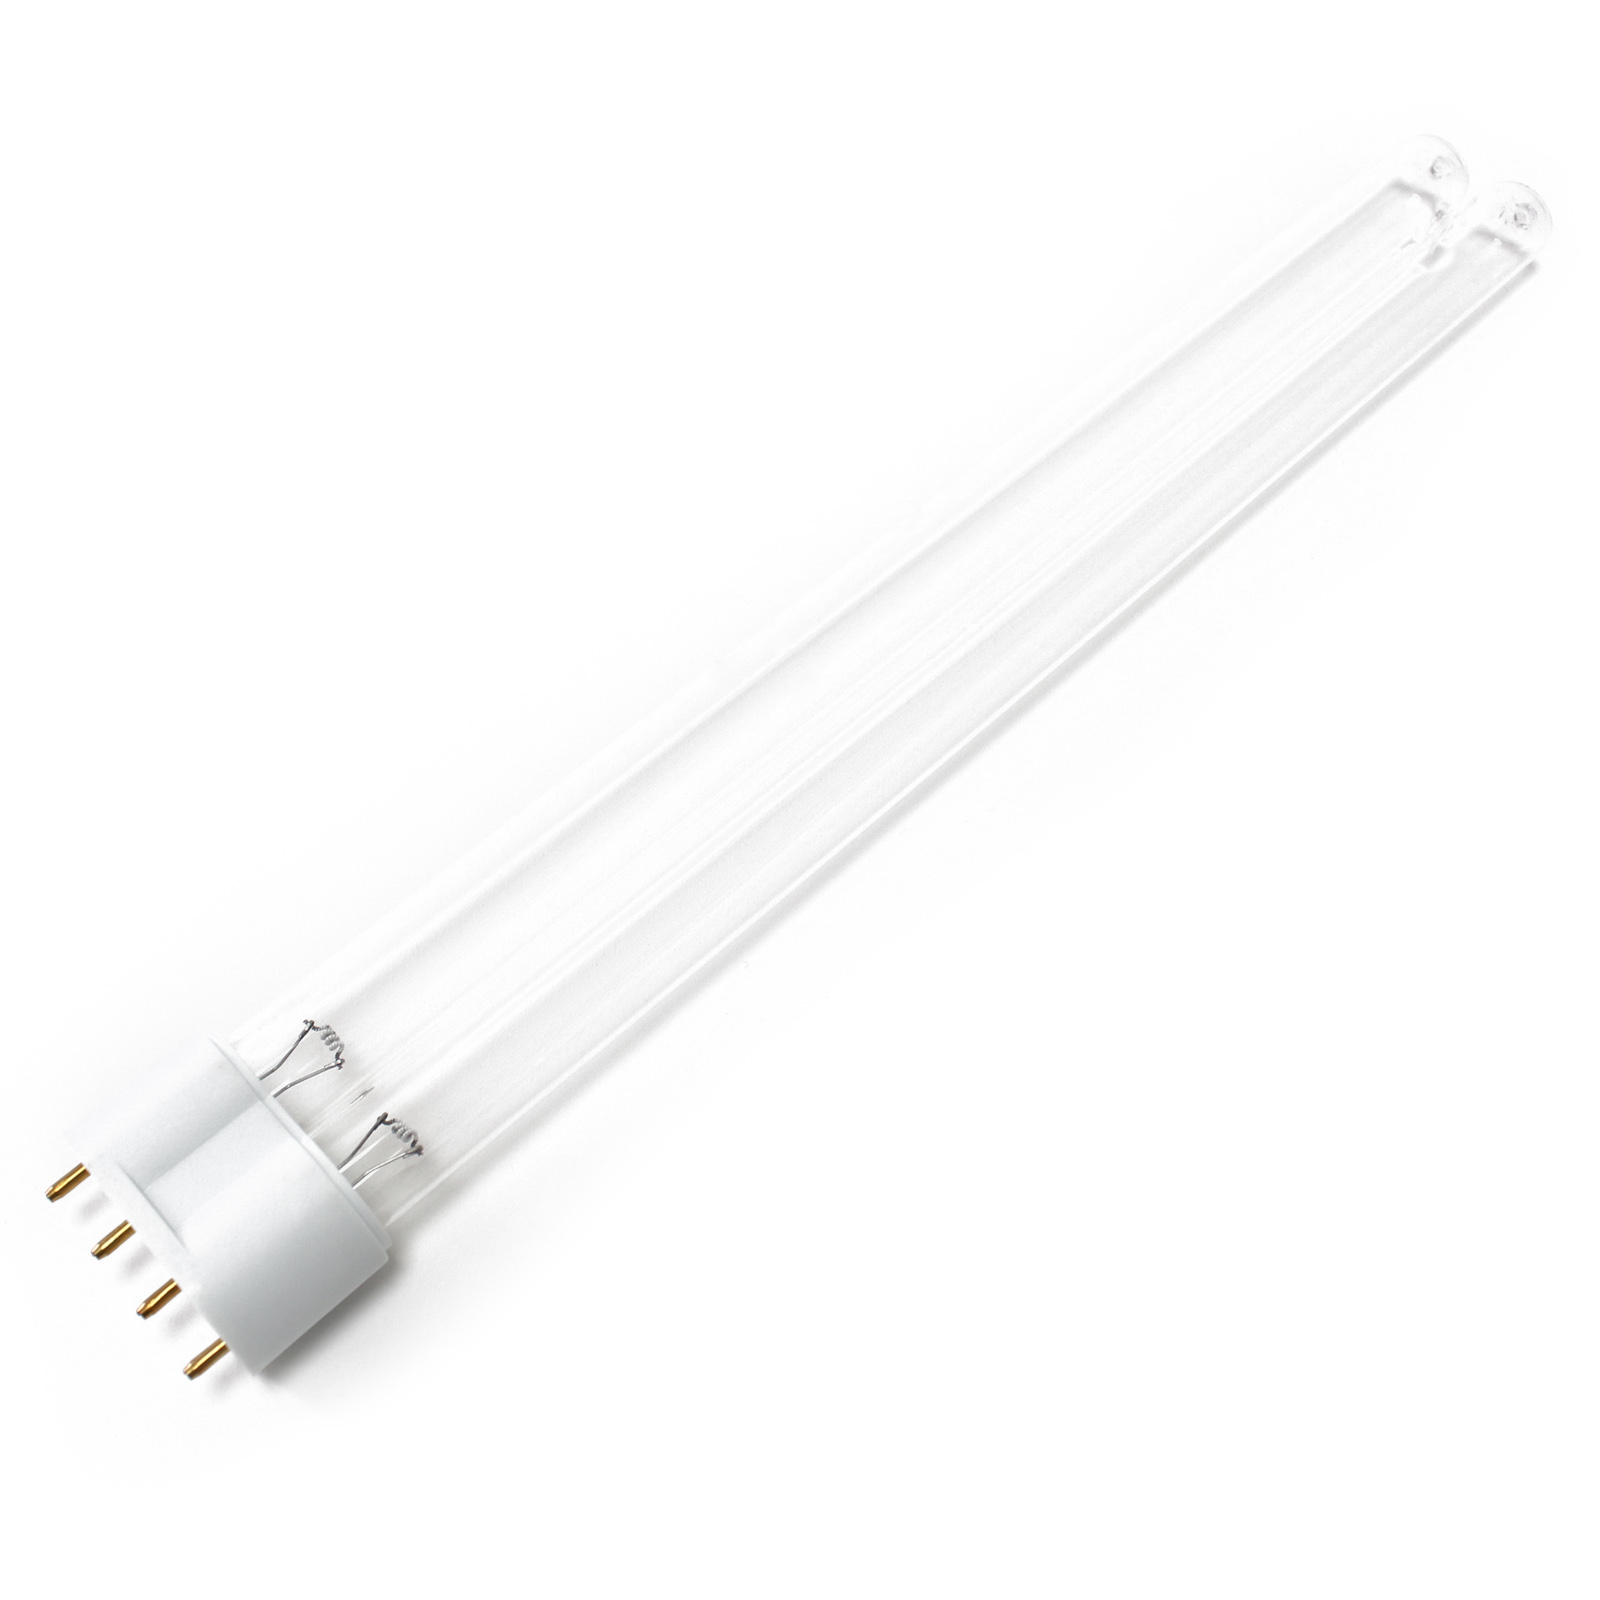 CUV-6110 UV-C Lampe Röhre 110W Teich-Klärer UVC Leuchtmittel